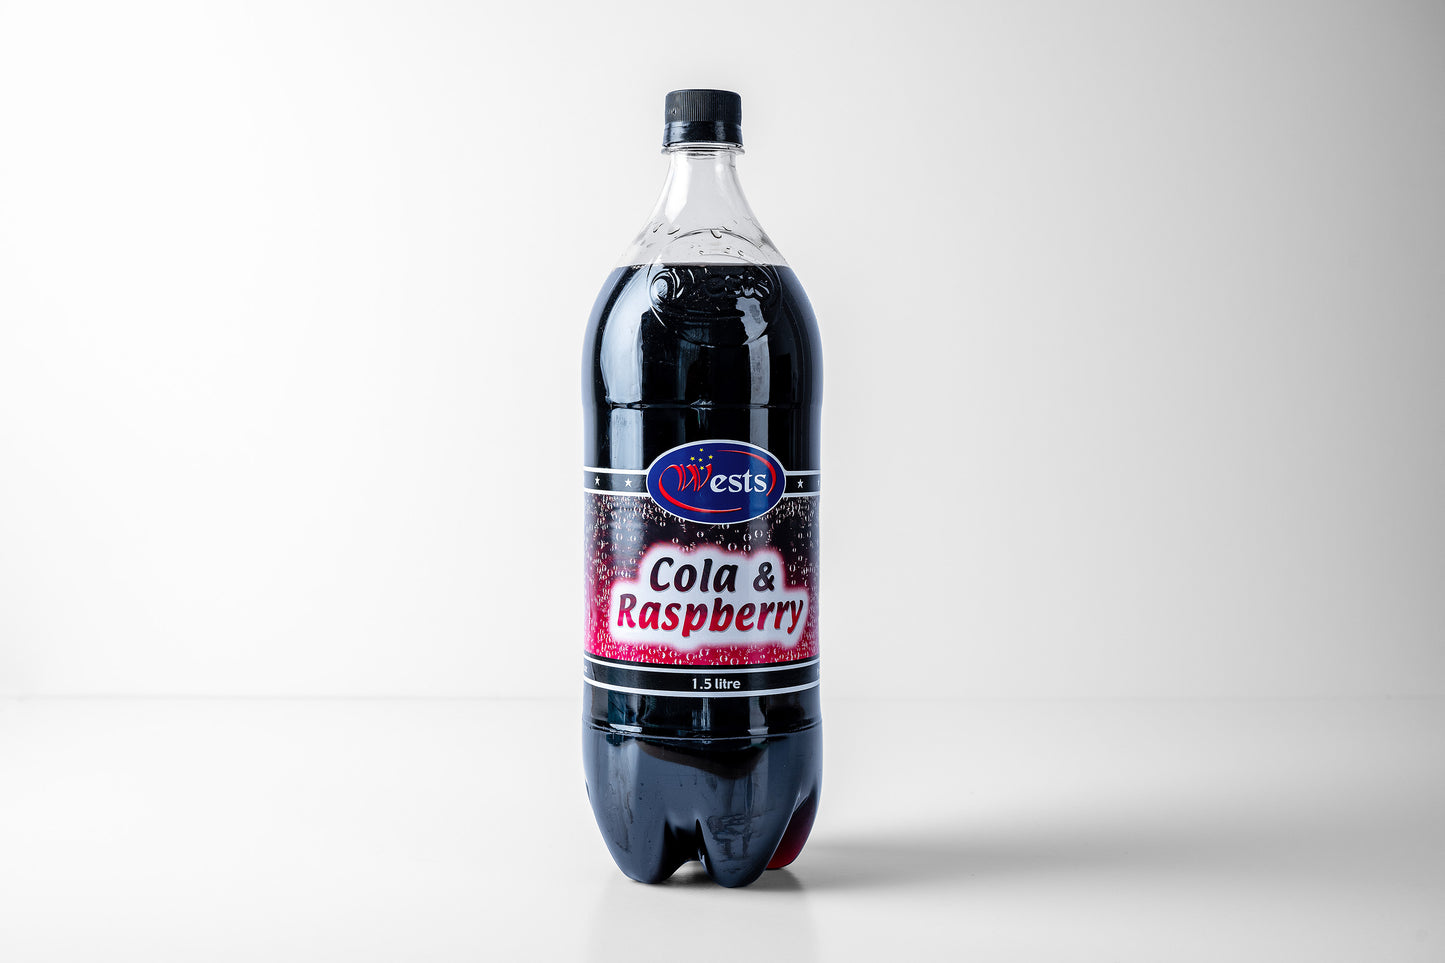 Cola & Raspberry